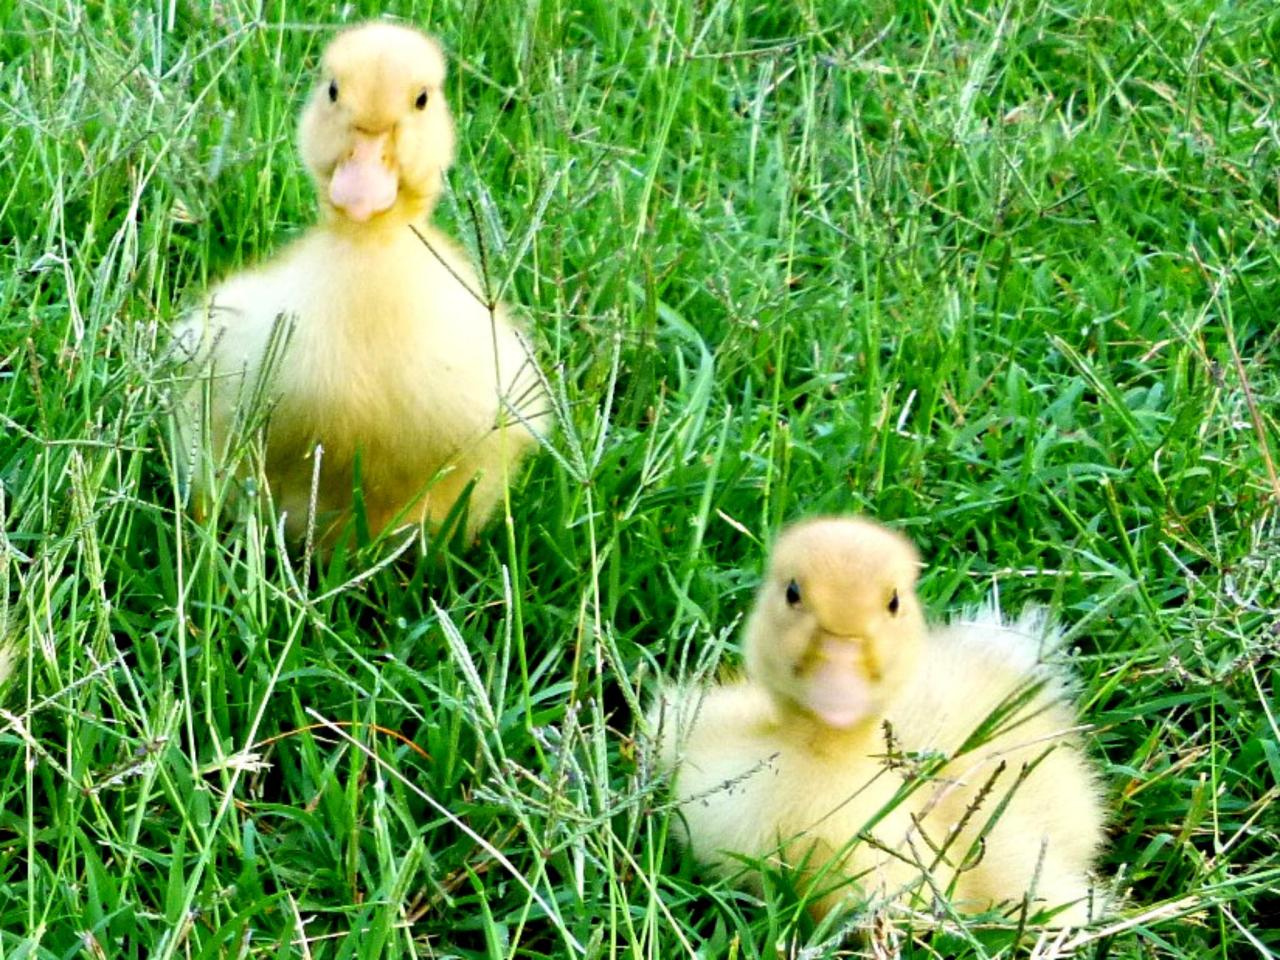 Raising Ducks - How to Care for Ducklings | HGTV